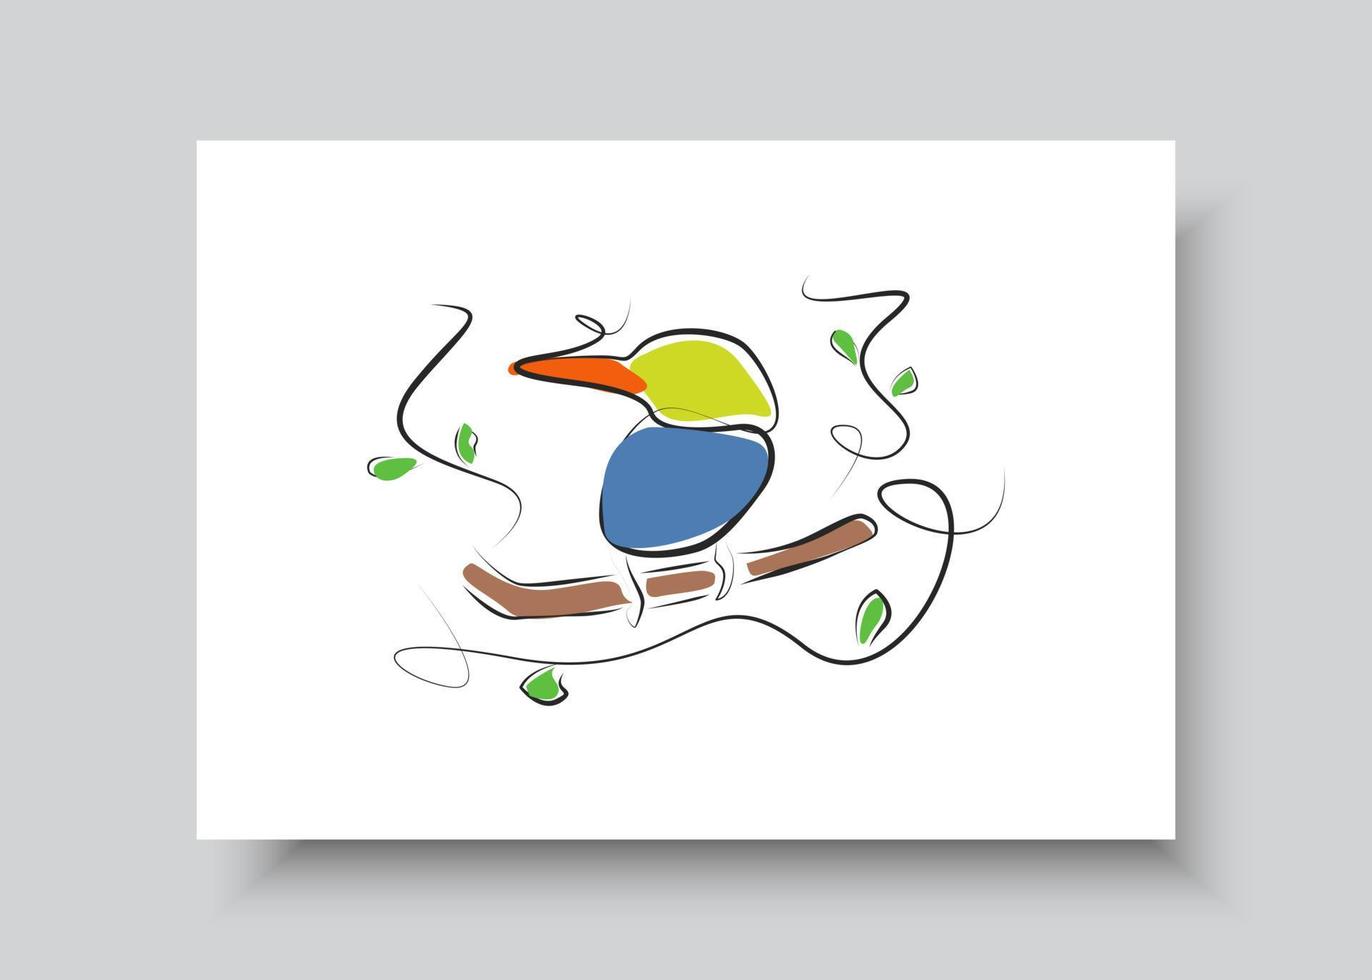 Strichzeichnungen des Vogels. abstrakte handgezeichnete Vektorillustration. abstraktes Pflanzenkunstdesign für Druck, Wohnkultur, Cover, Tapete, minimale und natürliche Wandkunstplakate vektor